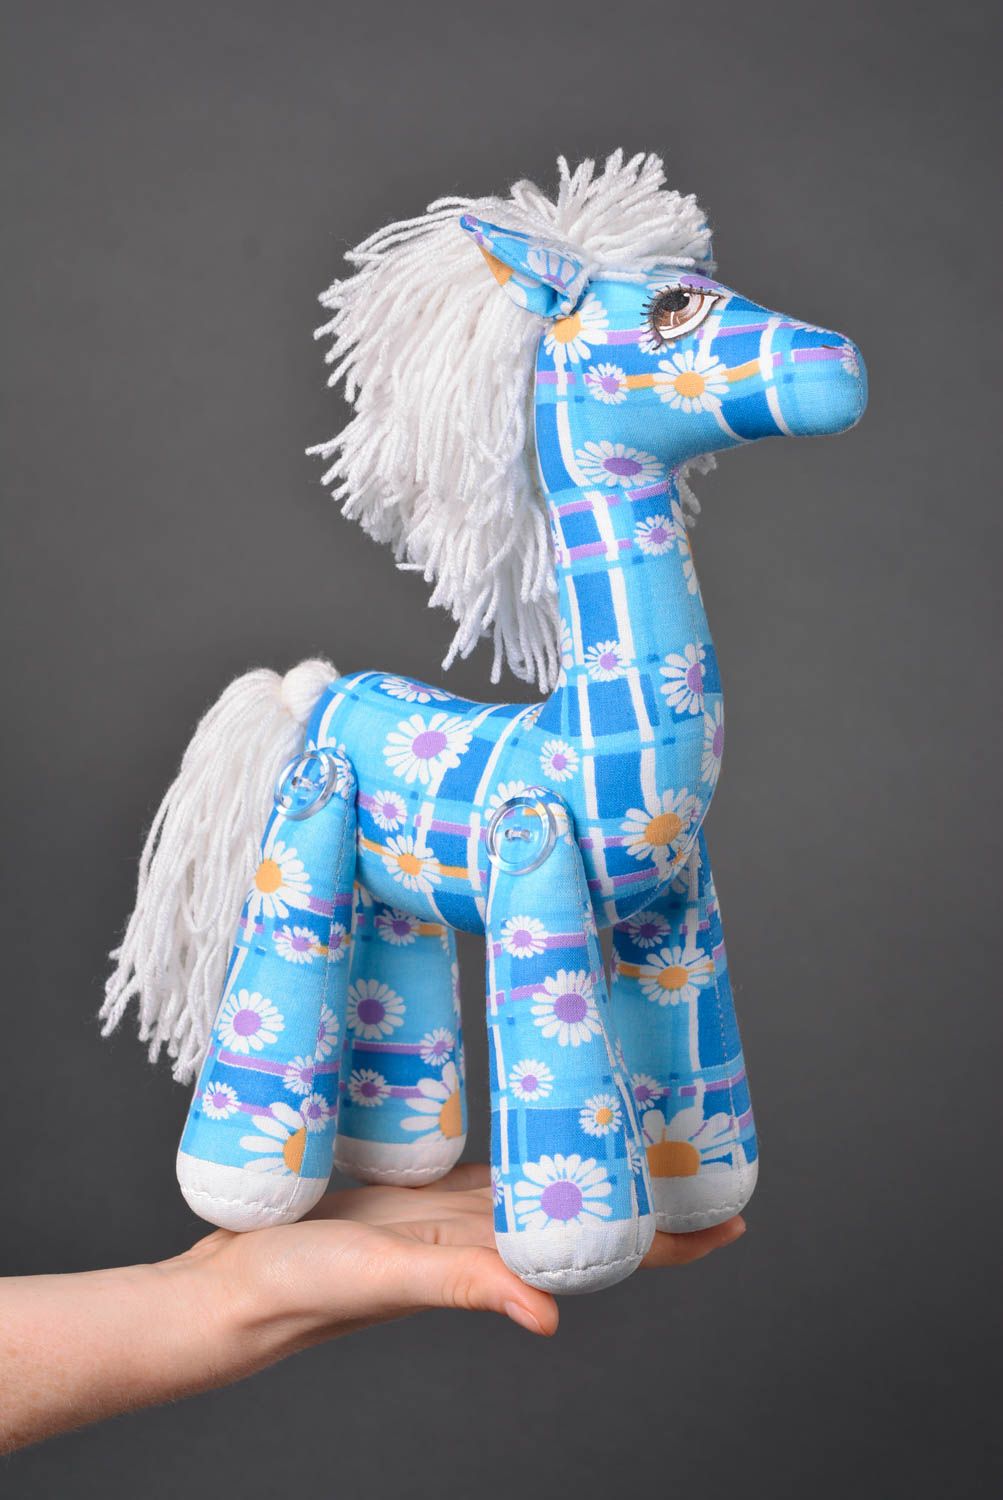 Игрушка лошадка ручной работы детская игрушка расписанная акрилом мягкая игрушка фото 5